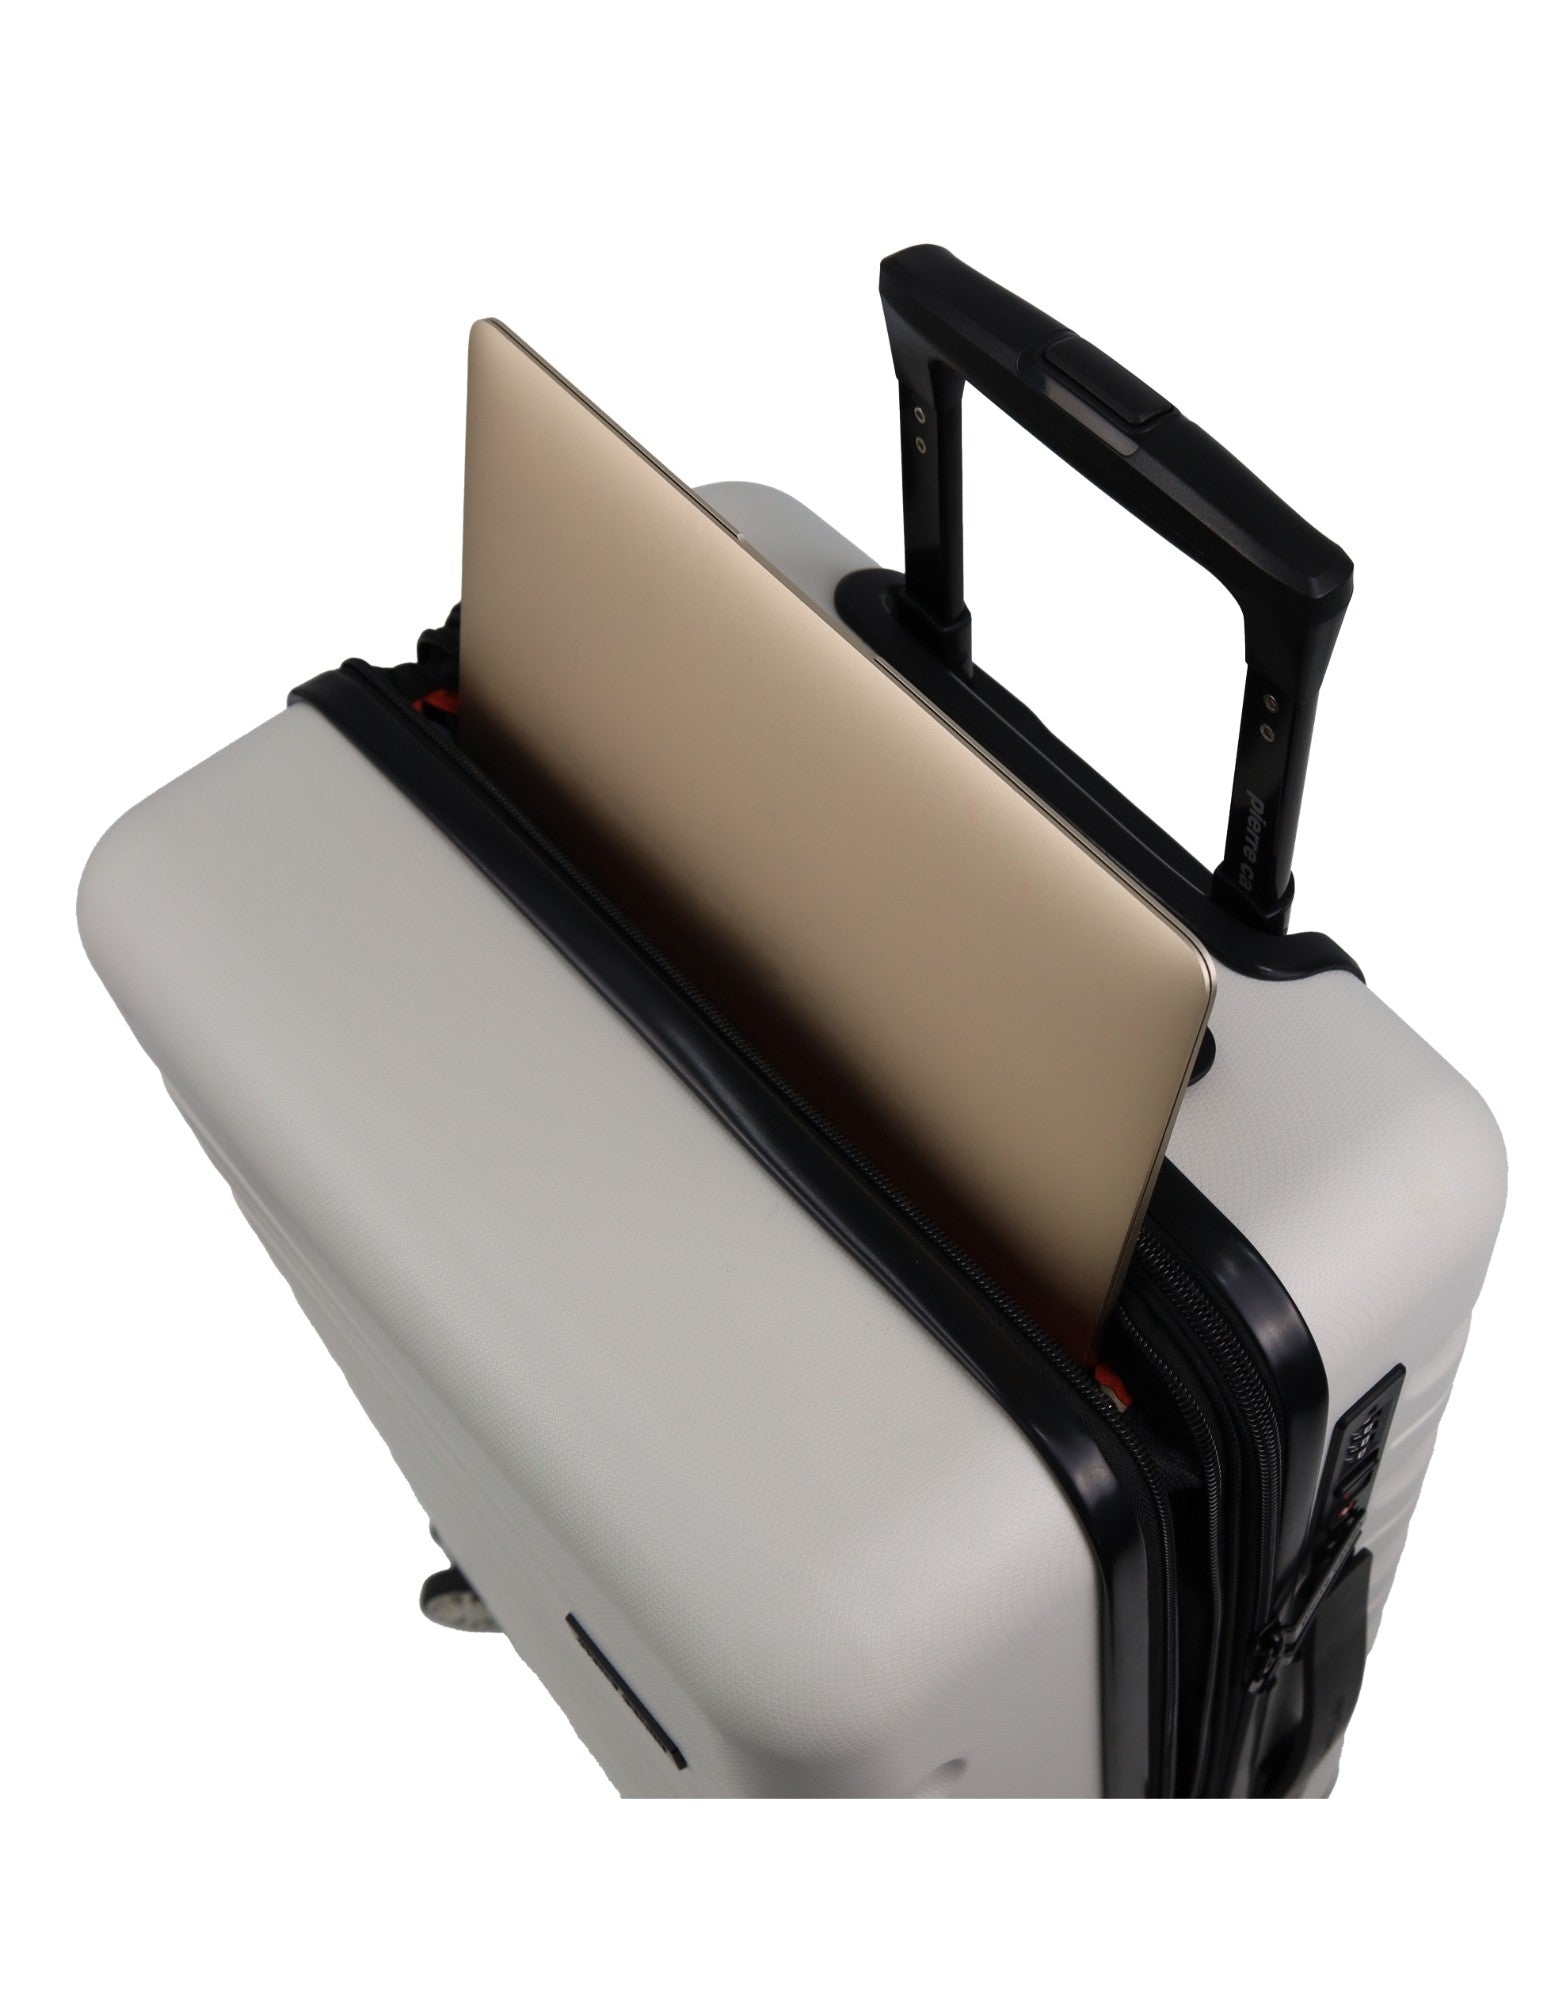 Pierre Cardin 54cm CABIN Hard Shell Suitcase in Snow